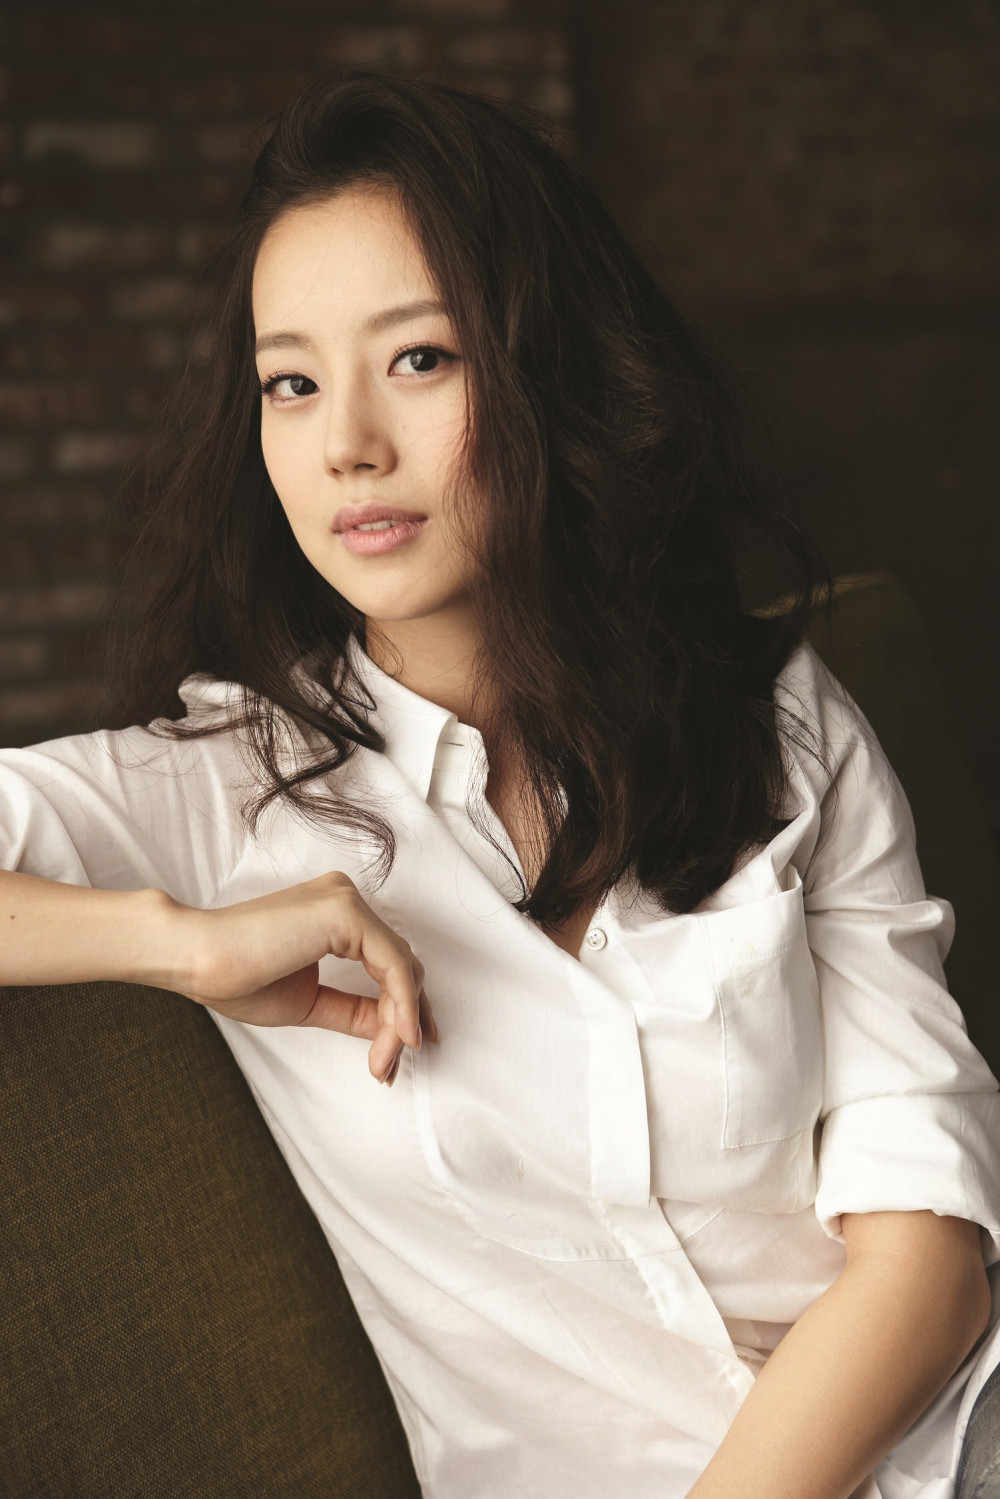 Nữ diễn viên sinh năm 1986 góp mặt trong bộ phim điện ảnh đình đám War of the Arrows với doanh thu khổng lồ. Vai diễn Choi Ja In đã giúp Moon giành giải Nữ diễn viên mới xuất sắc nhất tại Giải thưởng Rồng Xanh lần thứ 32 và giải thưởng Grand Bell.